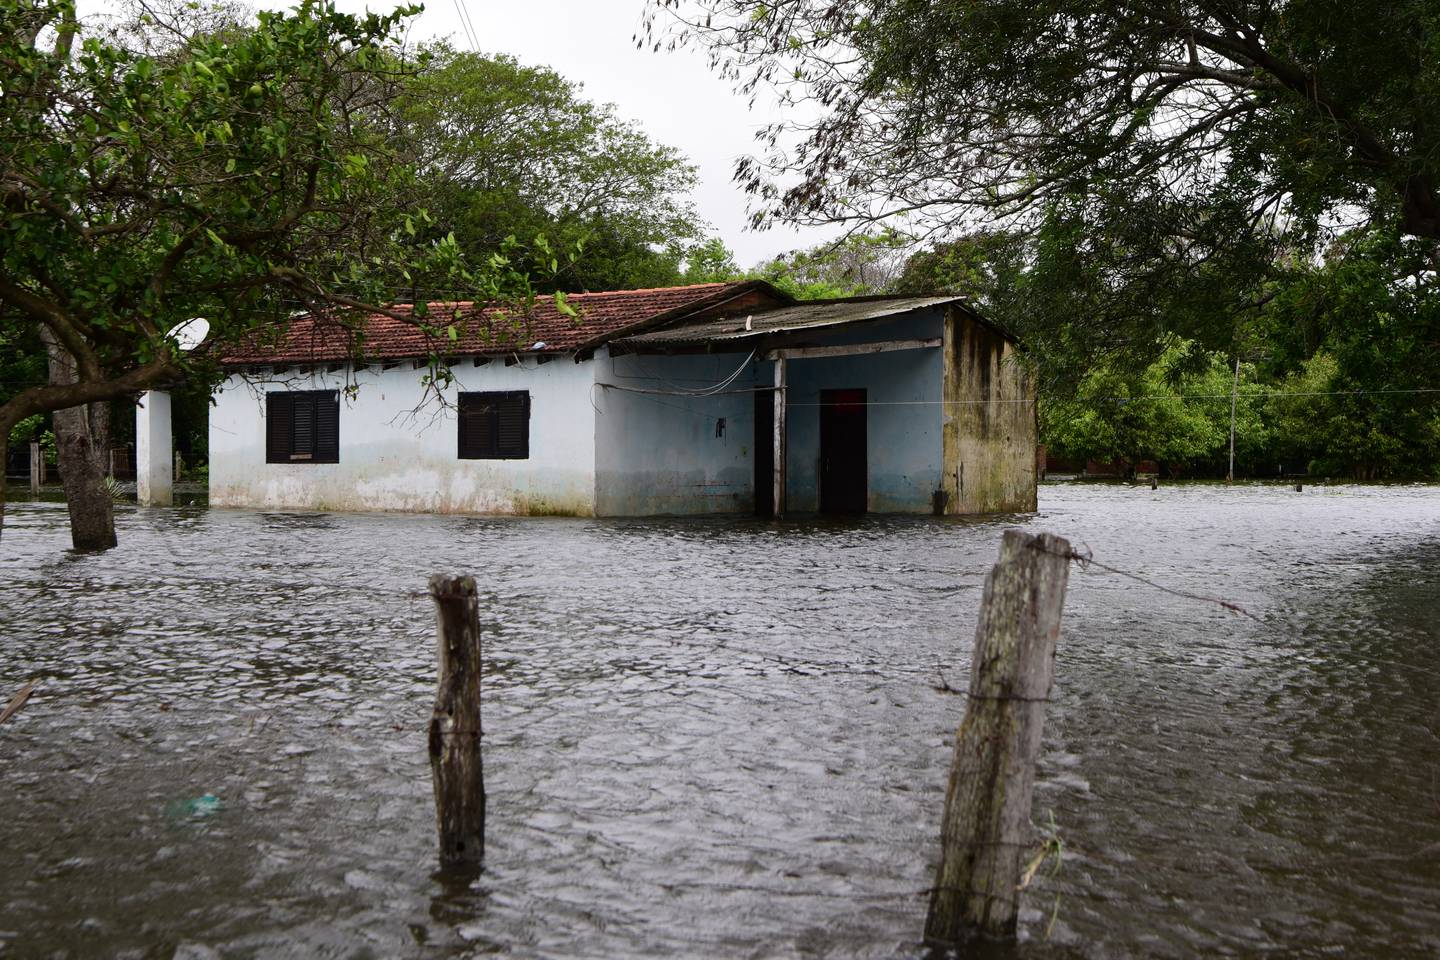 Brasil coordinó una reunión con los países del Mercosur, incluyendo Argentina, Paraguay y Uruguay, para establecer una respuesta conjunta ante el ciclón que afecta la región y que se espera continúe hasta el domingo.